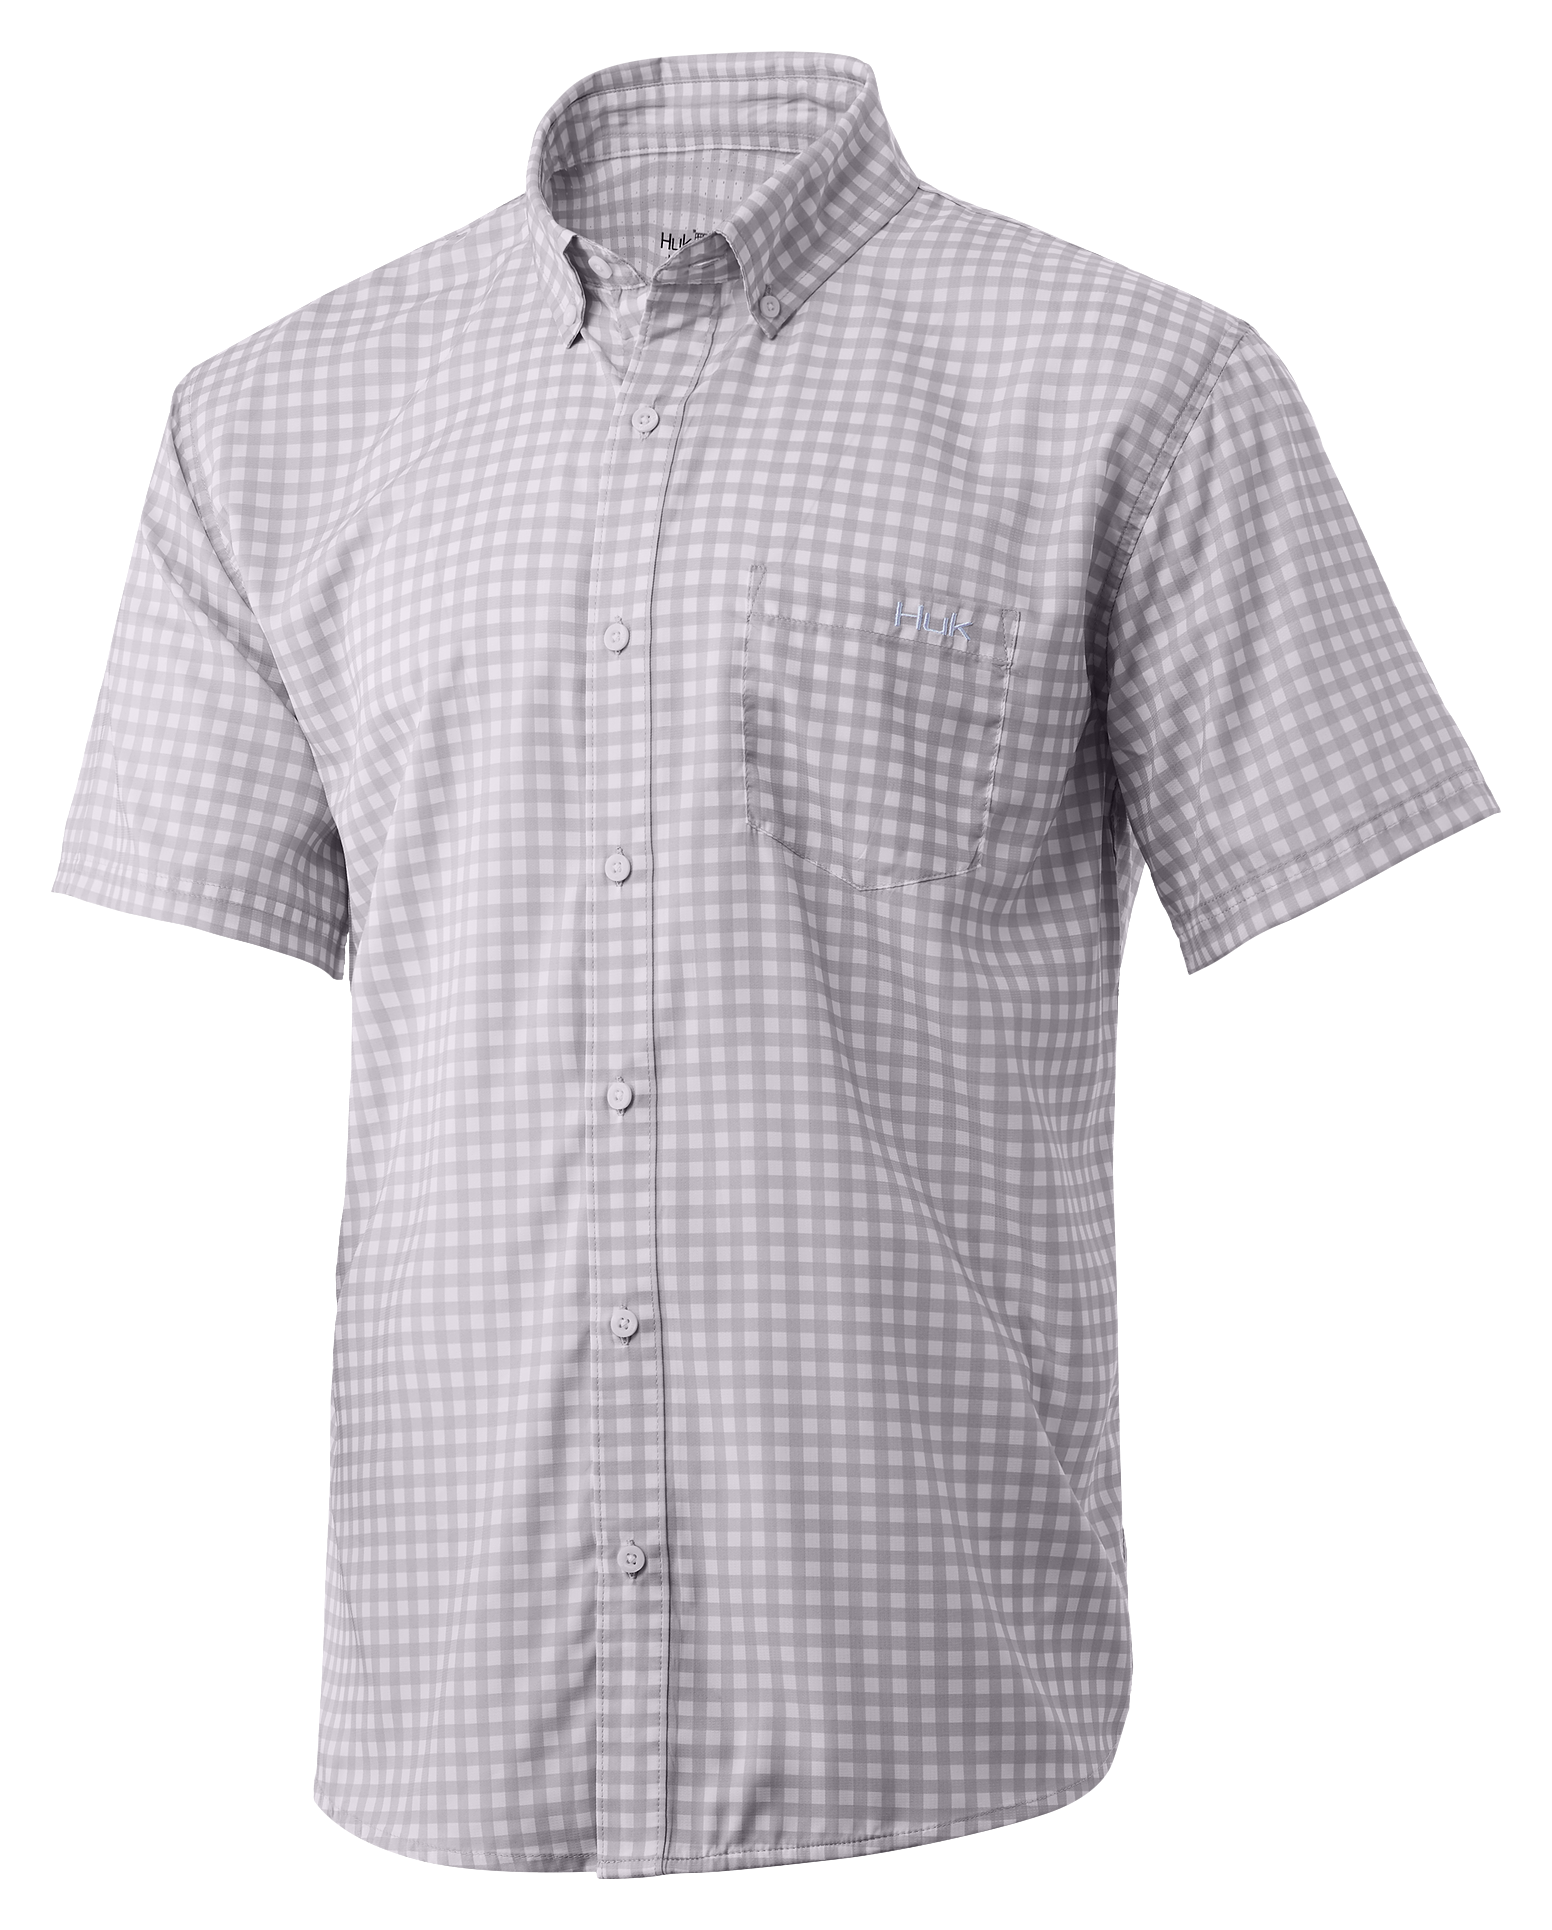 Huk Teaser Gingham Short-Sleeve Shirt for Men | Cabela's